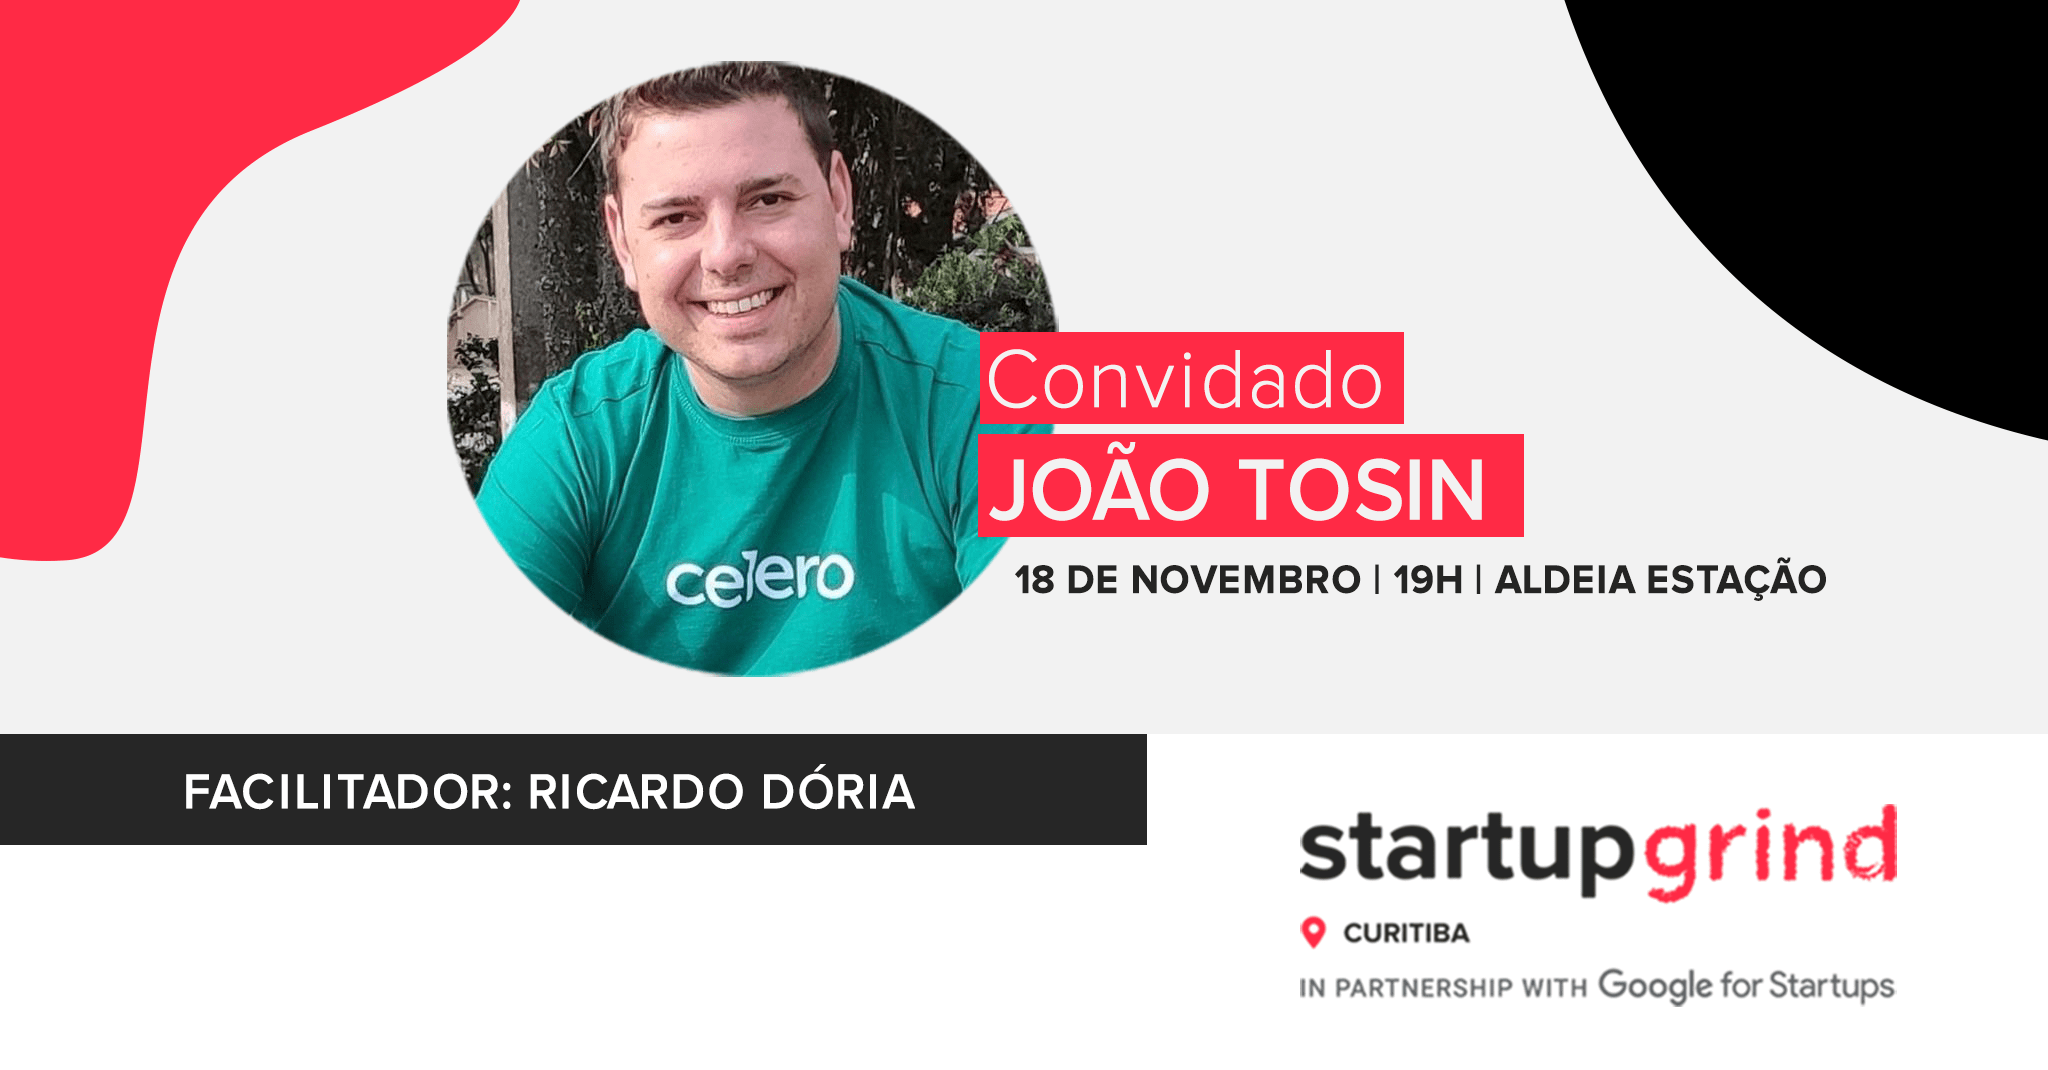 CEO da startup Celero, João Tosin, participa da próxima edição do Startup Grind, na Aldeia Estação